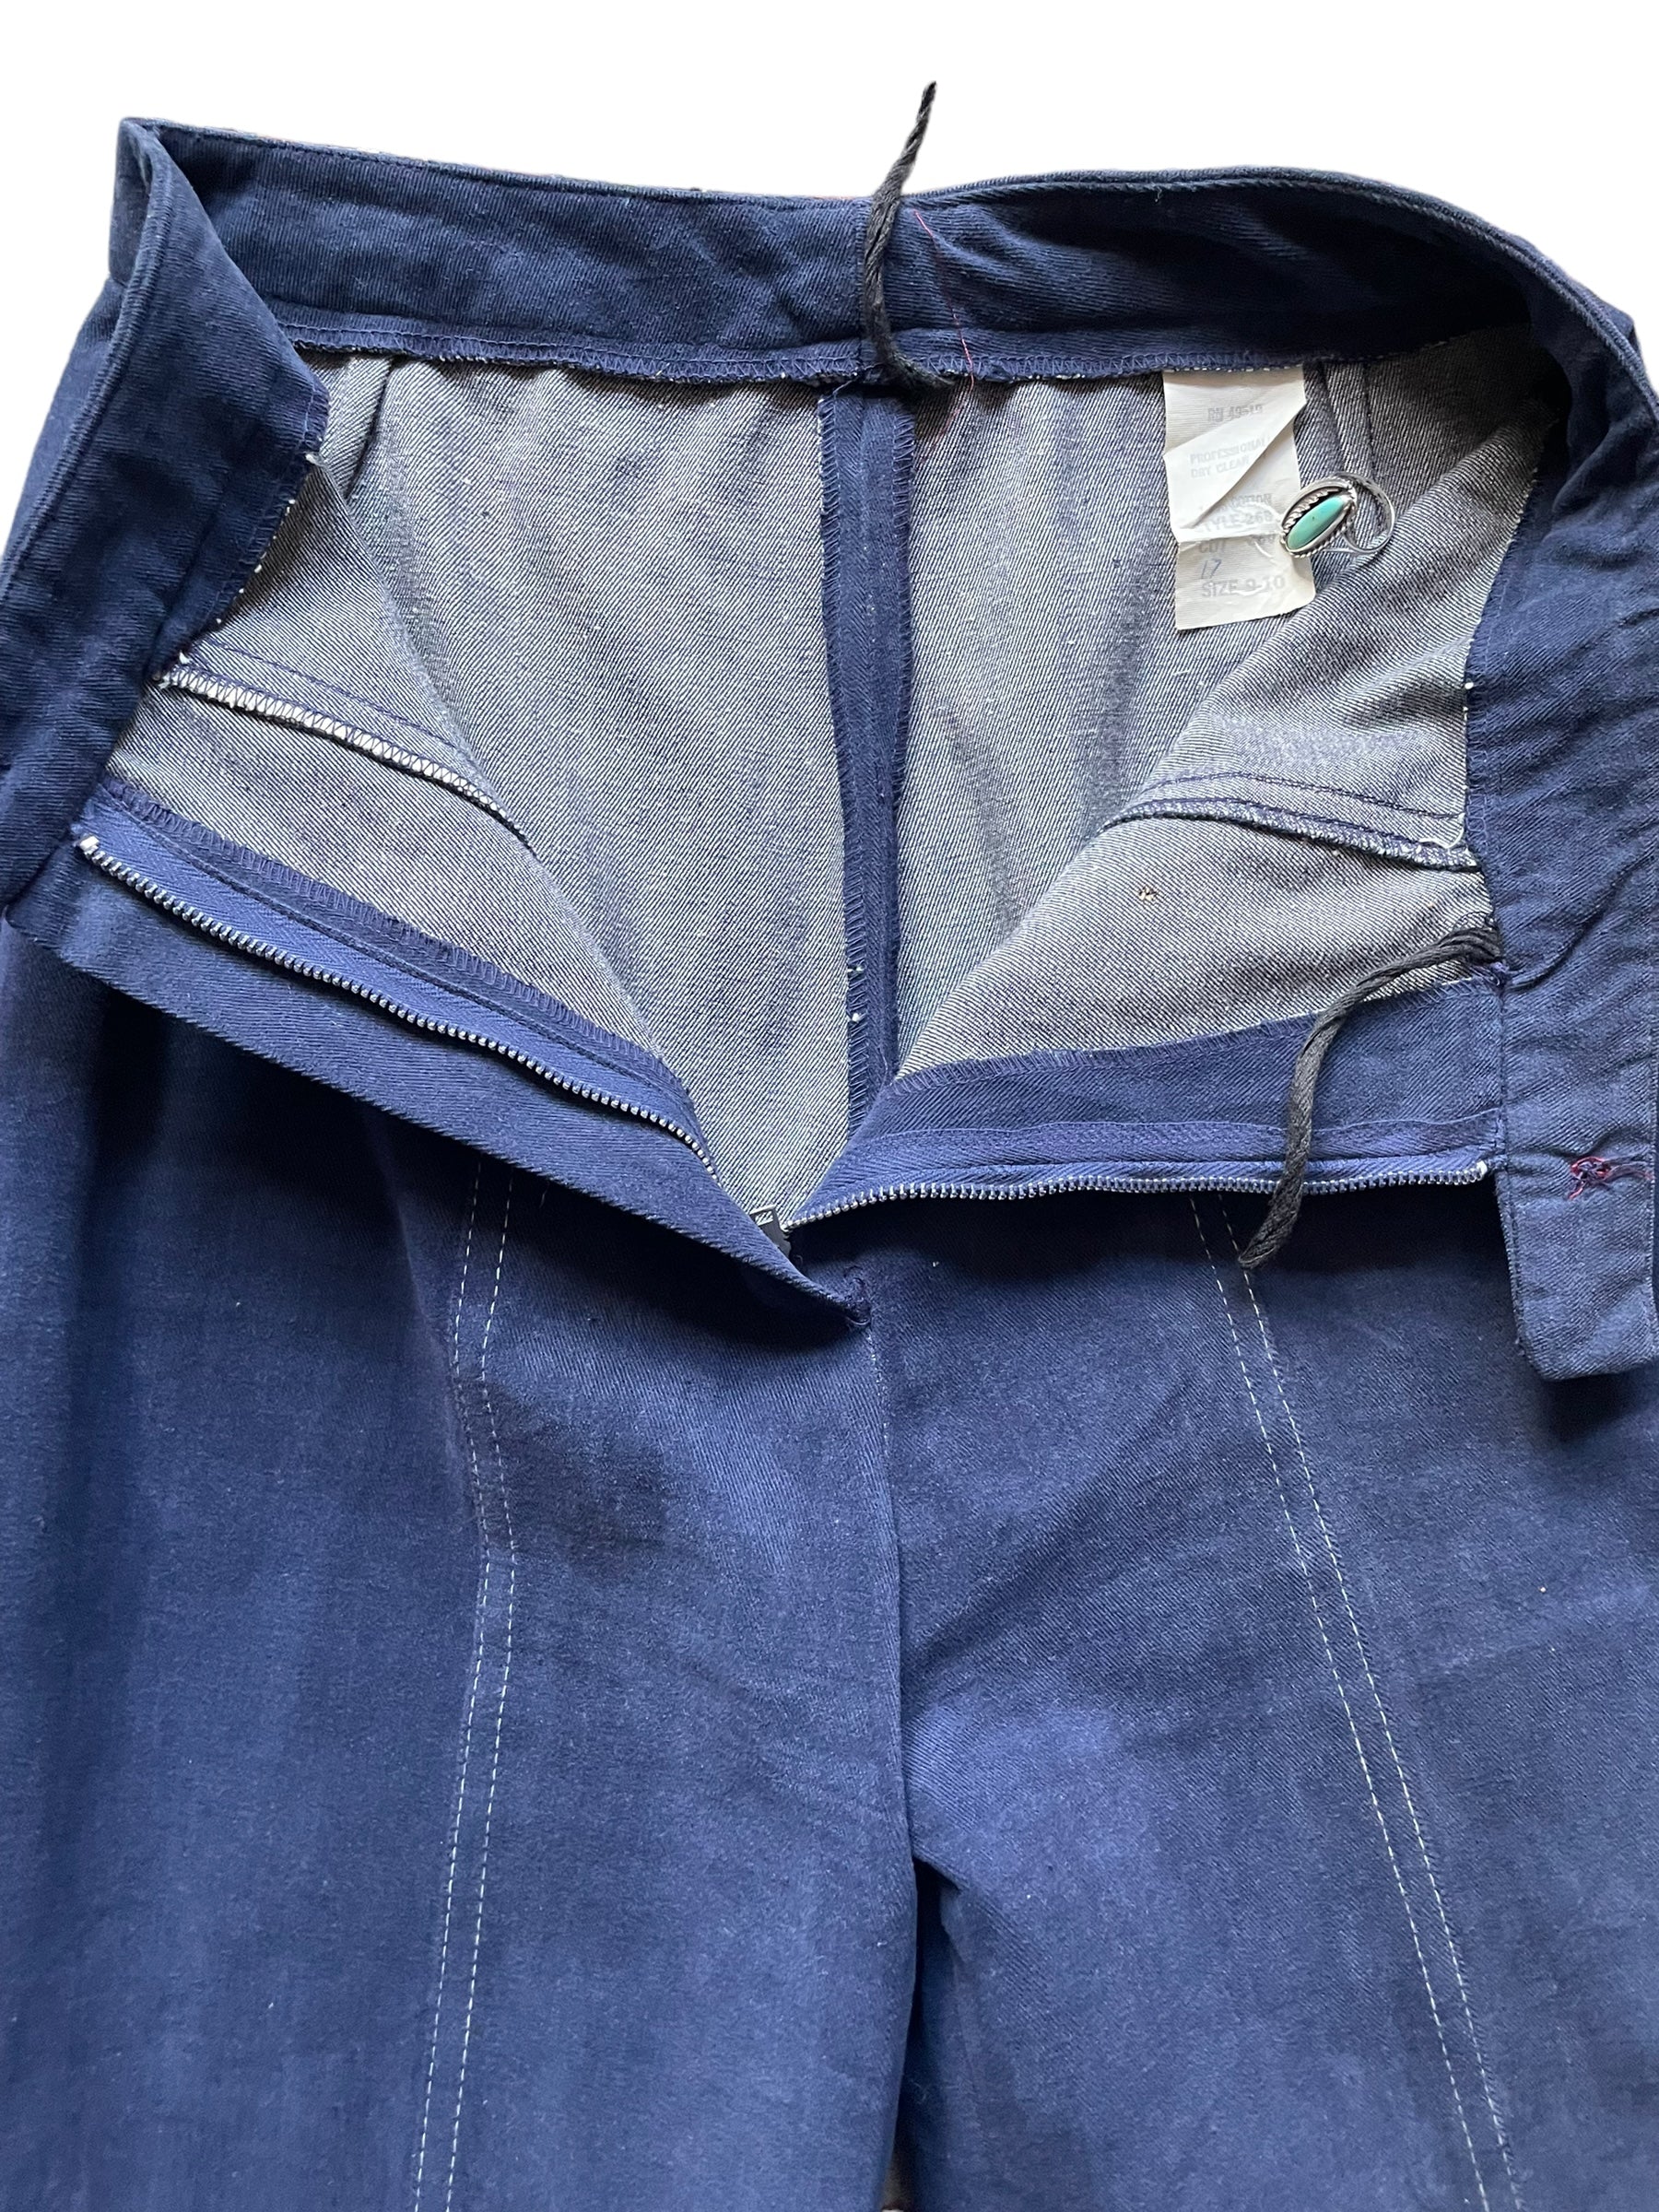 Open zipper view of Vintage 1970s Navy Moleskin Wide Leg Bells W26 | Barn Owl Vintage Seattle | Vintage 70s Moleskin Trousers